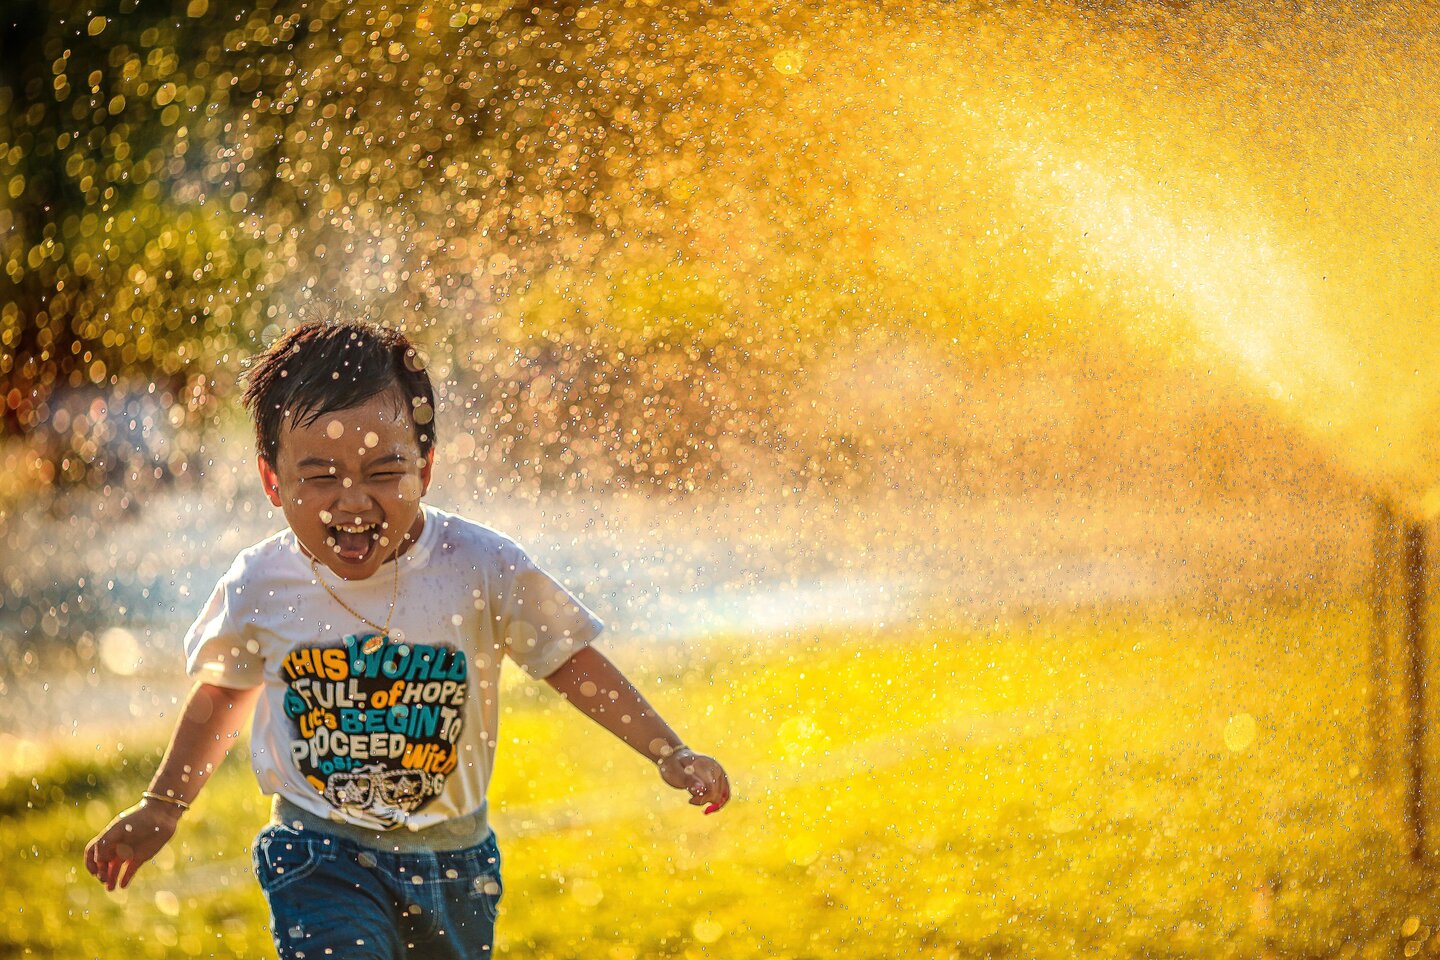 Image of smiling kid running through sprinkler